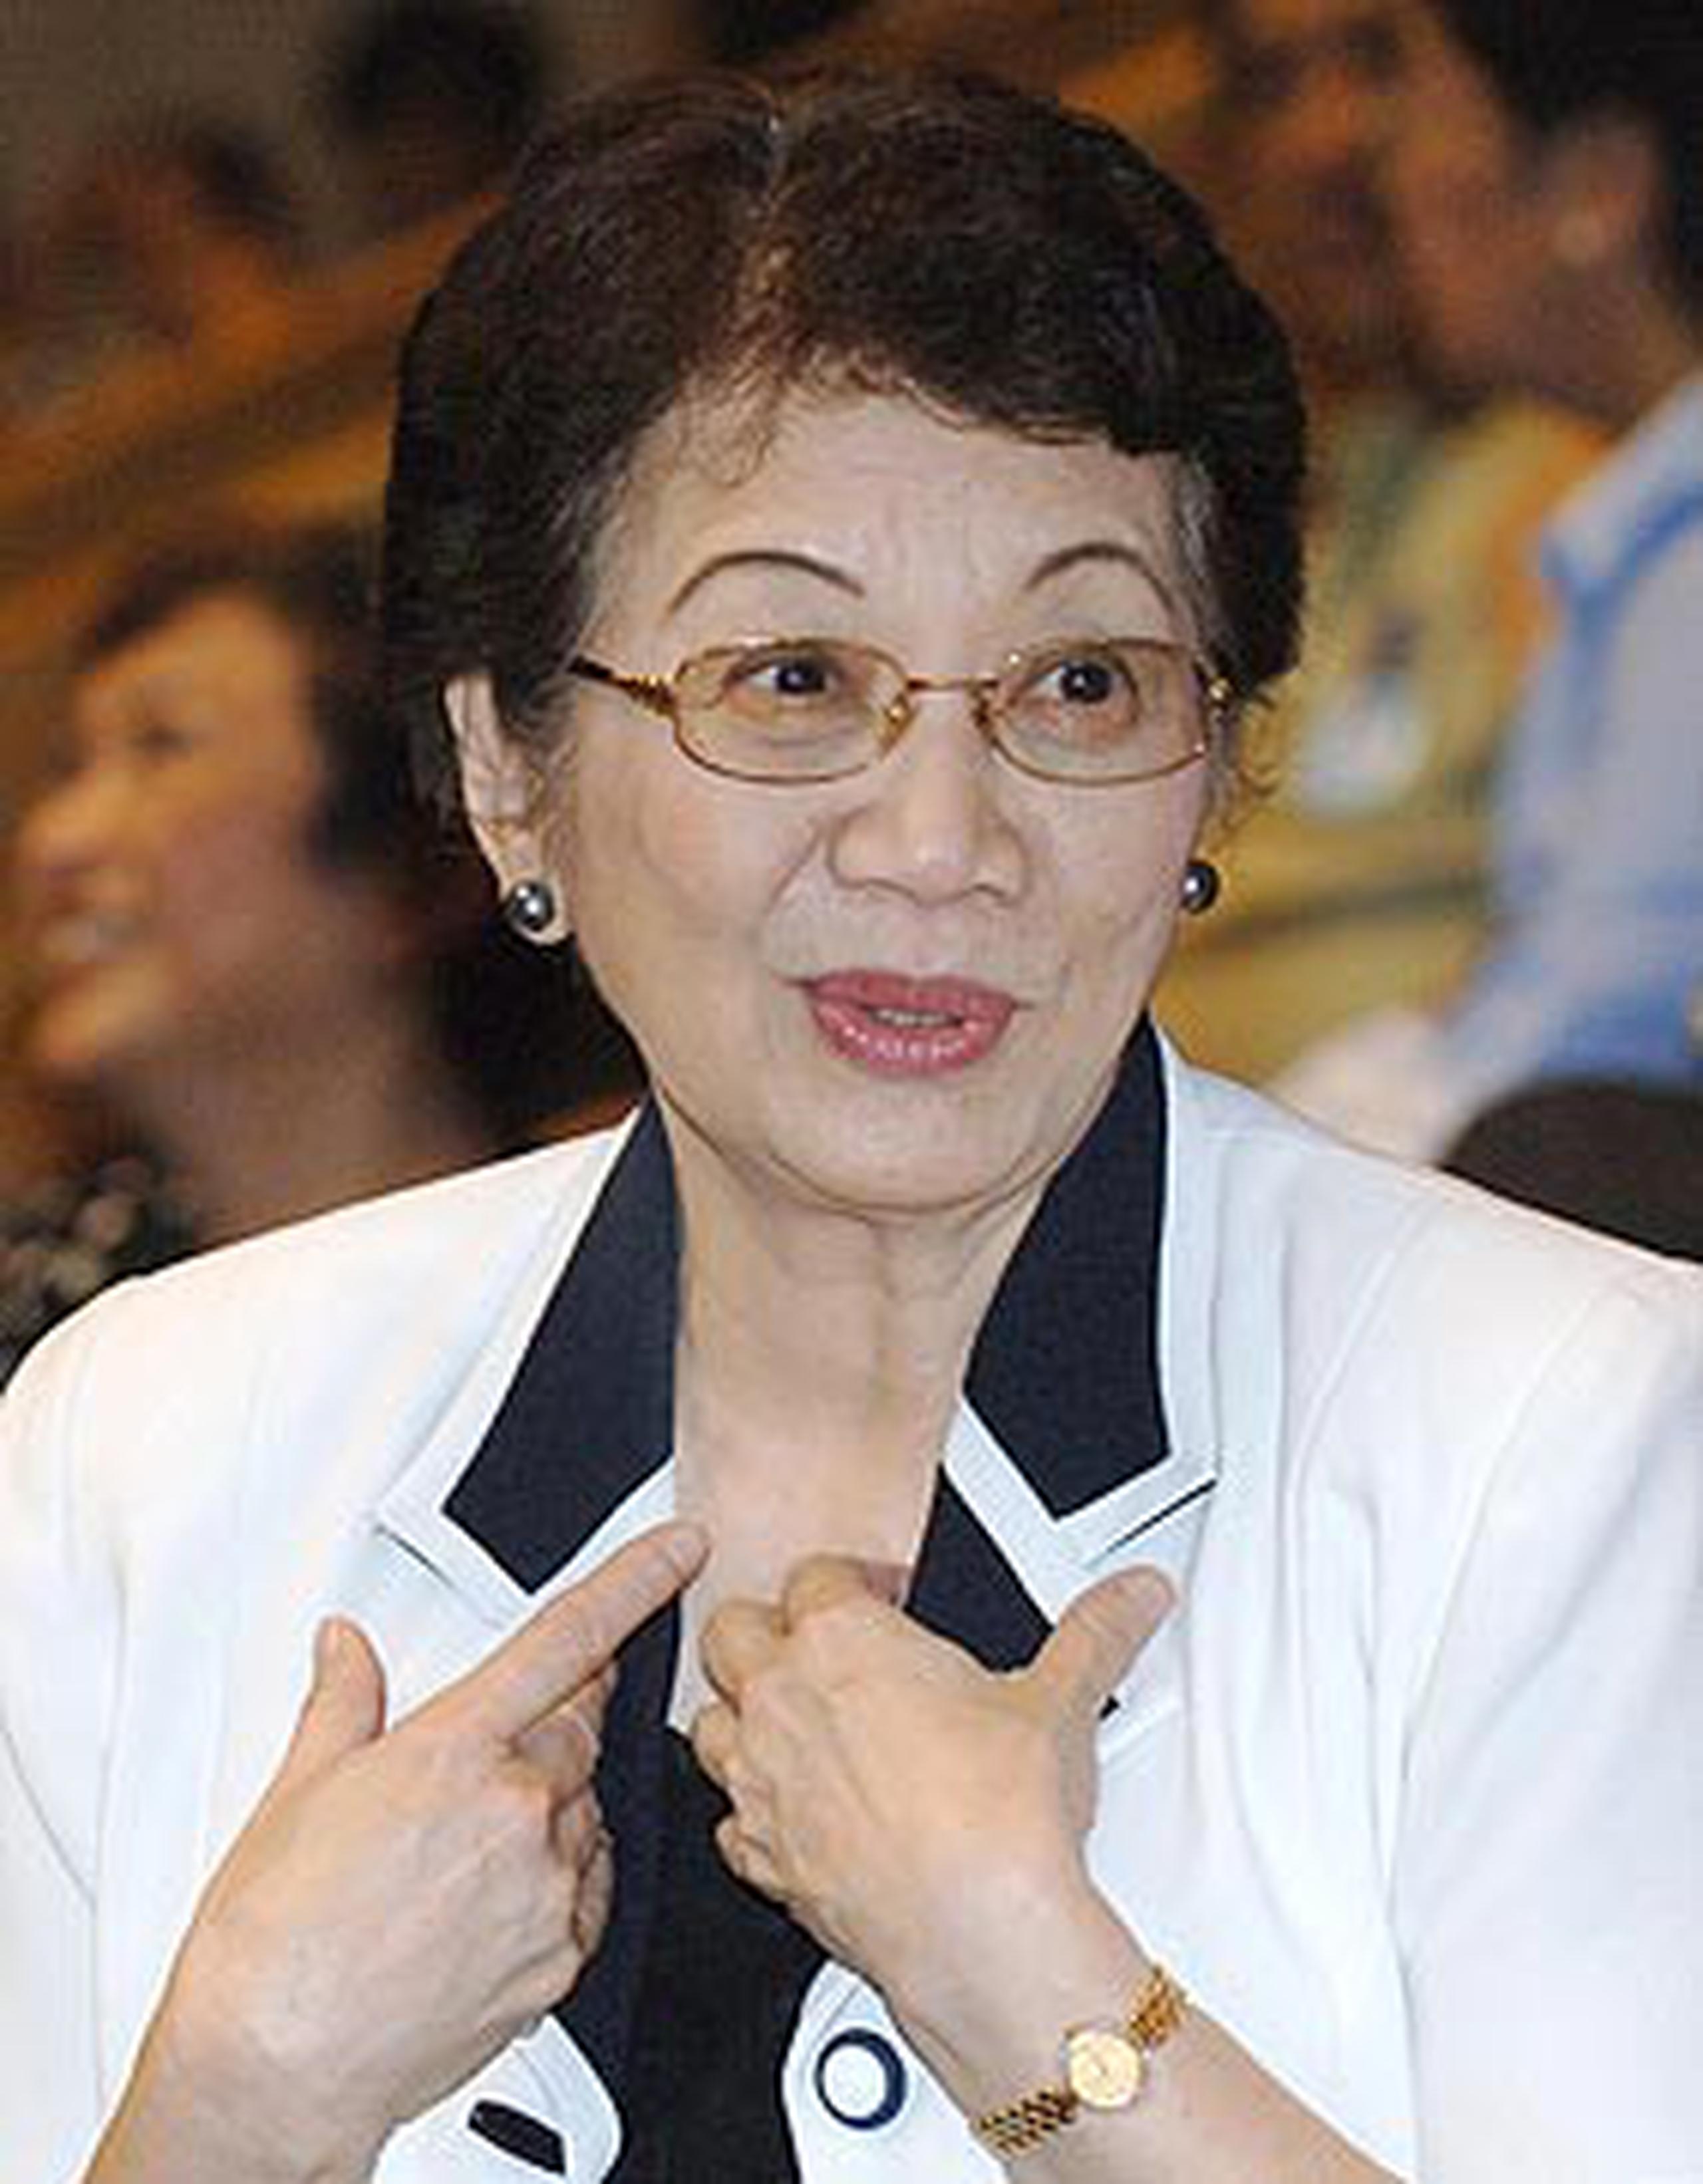 Corazón Aquino logró resistir siete intentonas golpistas mientras era presidenta de Filipinas. (Hrvoje Hranjski / Prensa Asociada)
